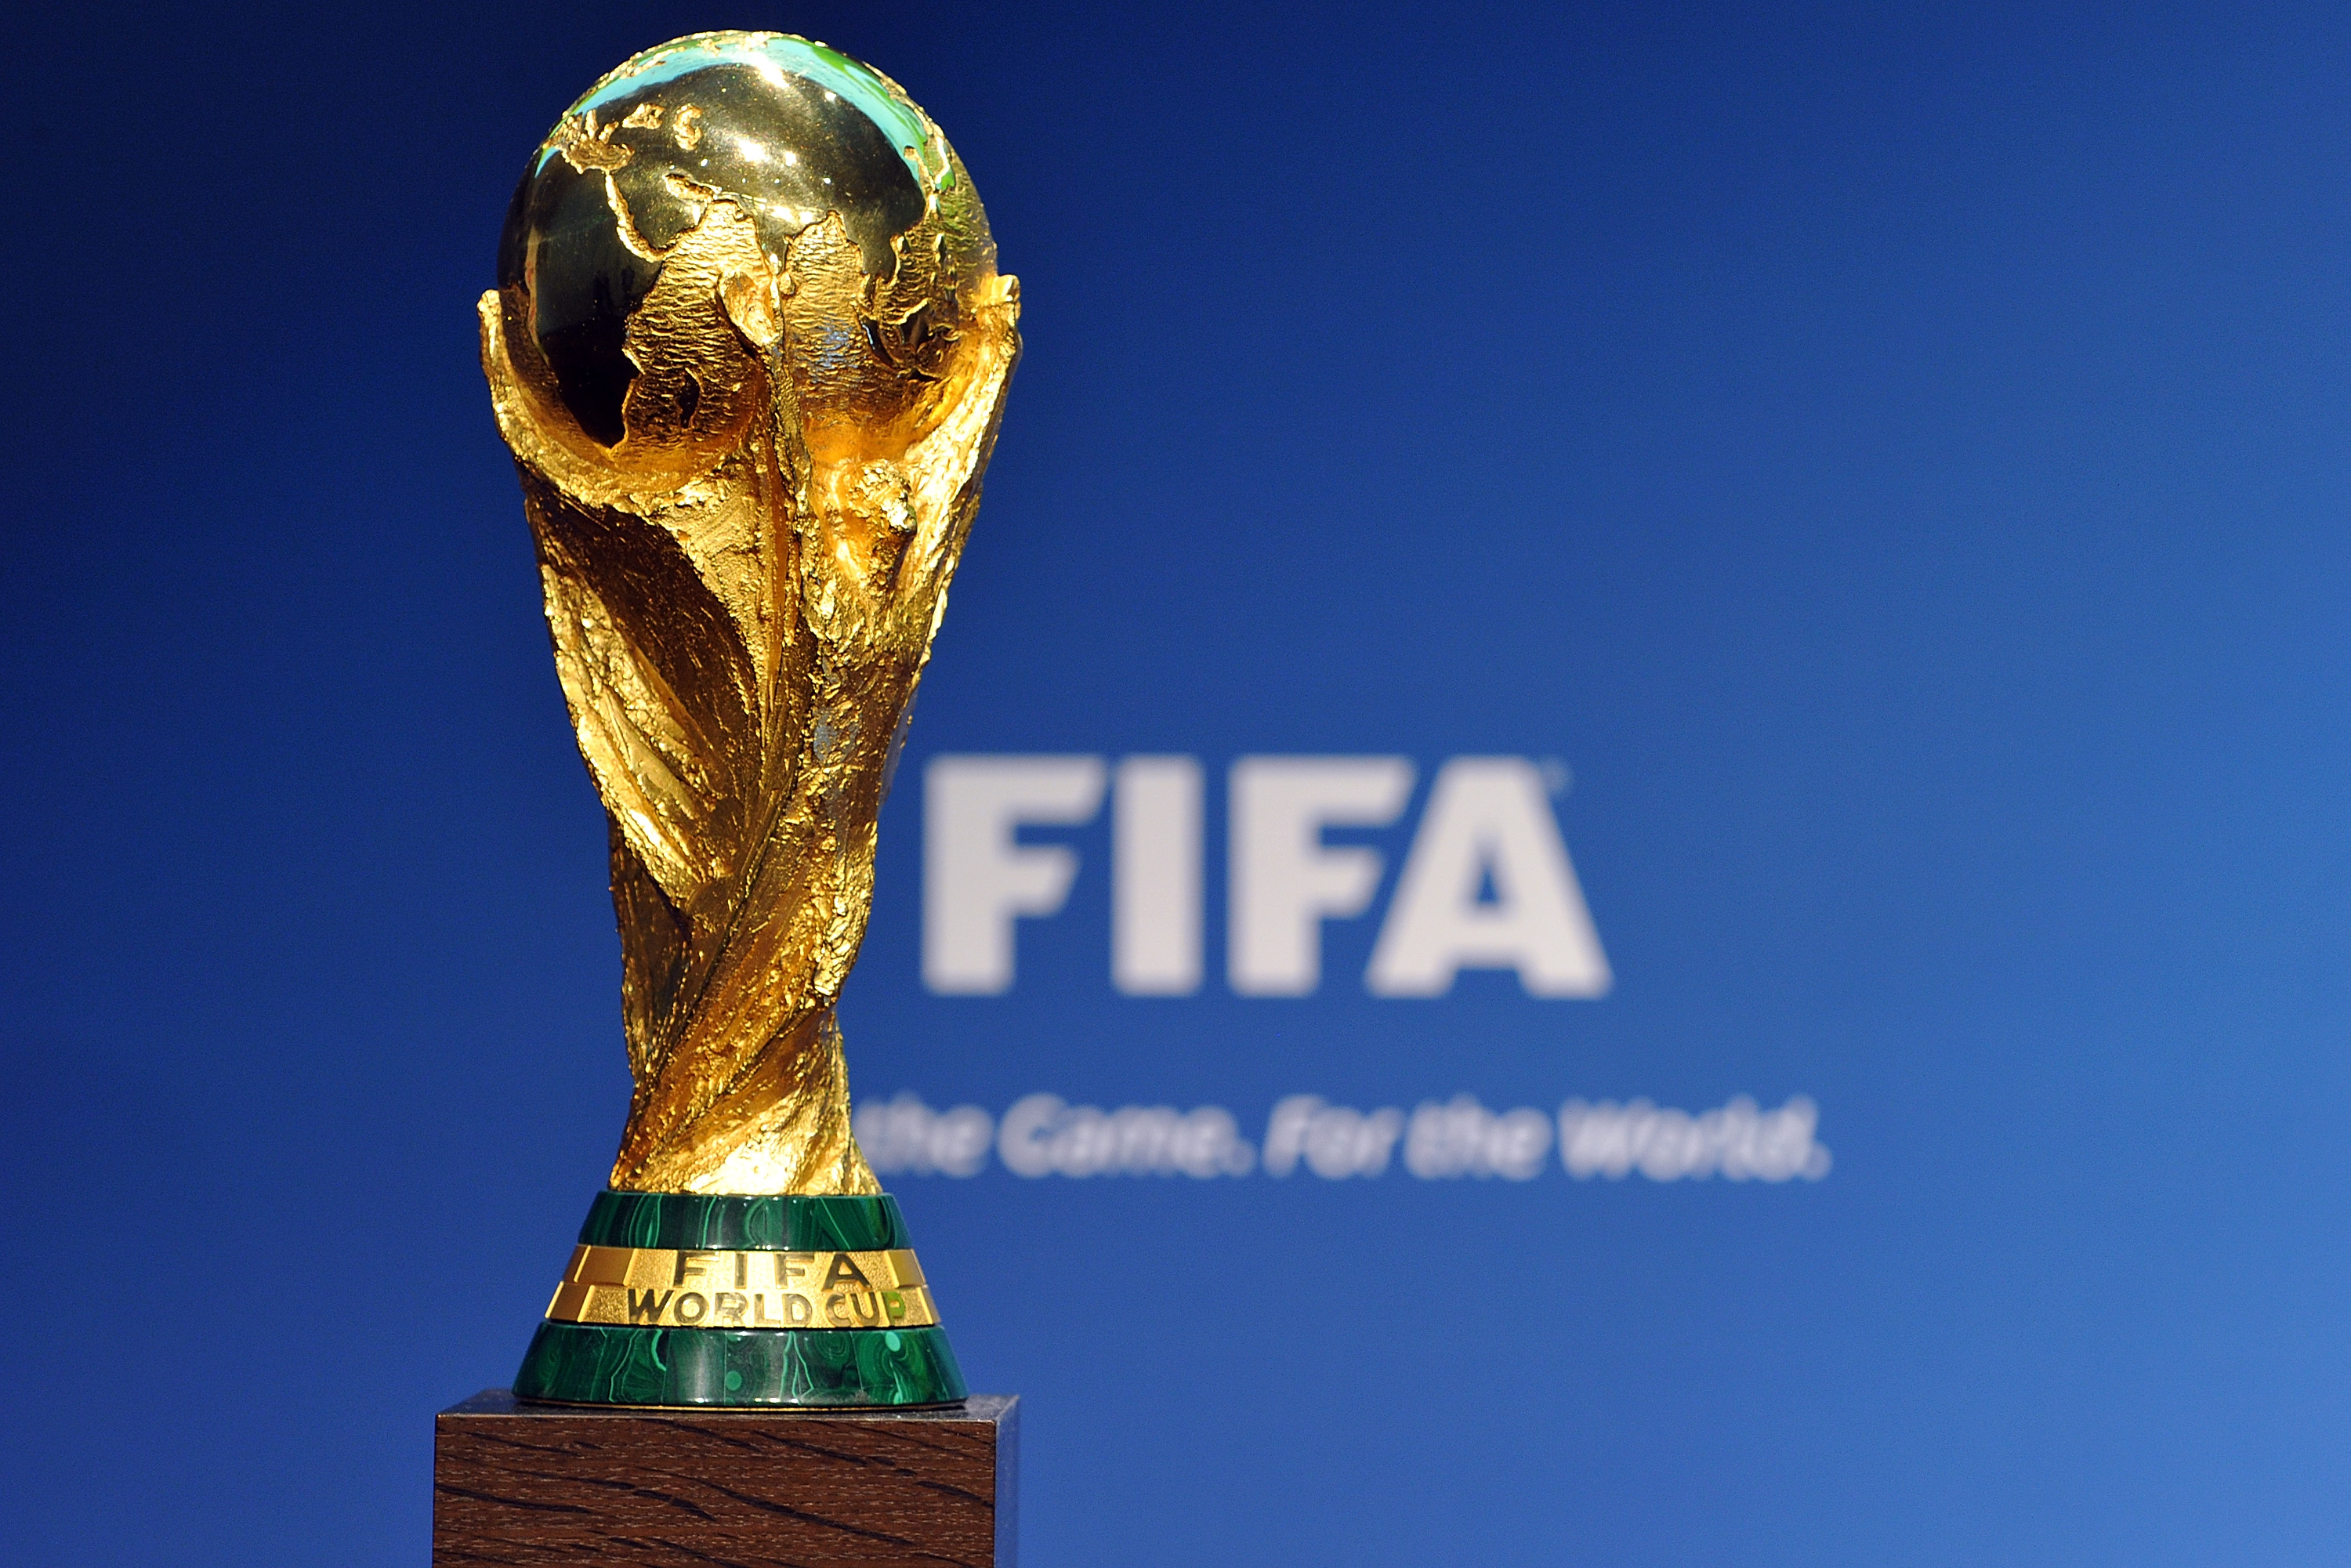 الفيفا يصادق على توزيع مقاعد كأس العالم 2026 وافريقيا المستفيد الأكبر